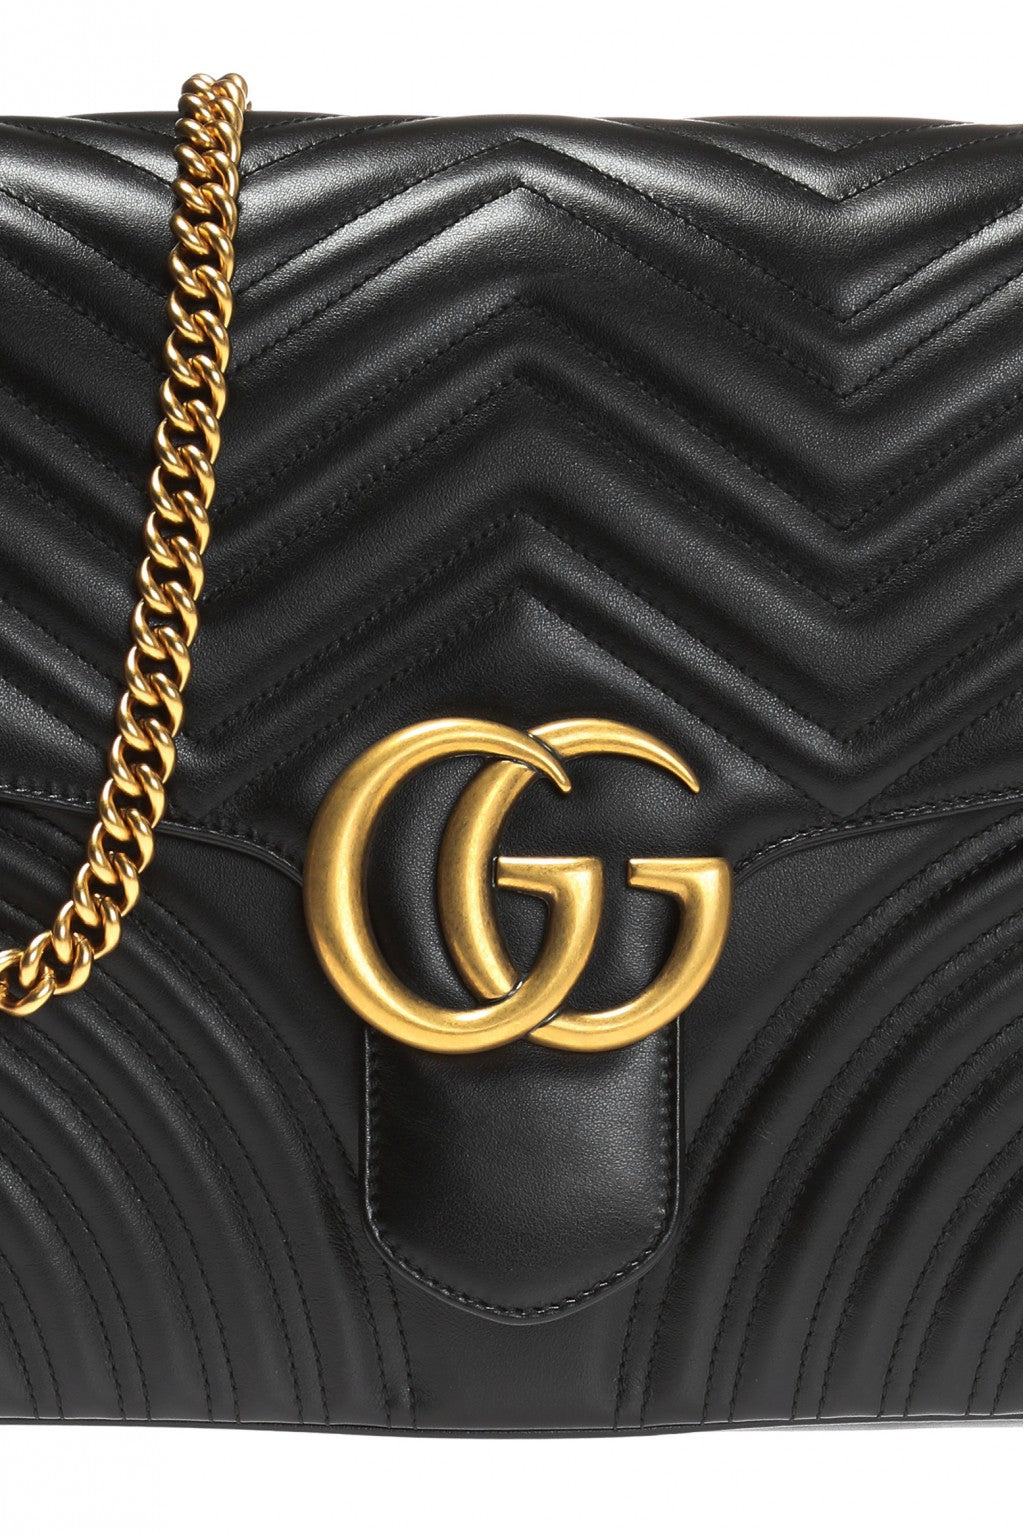 Gucci GG Marmont Large Shoulder Bag - Black